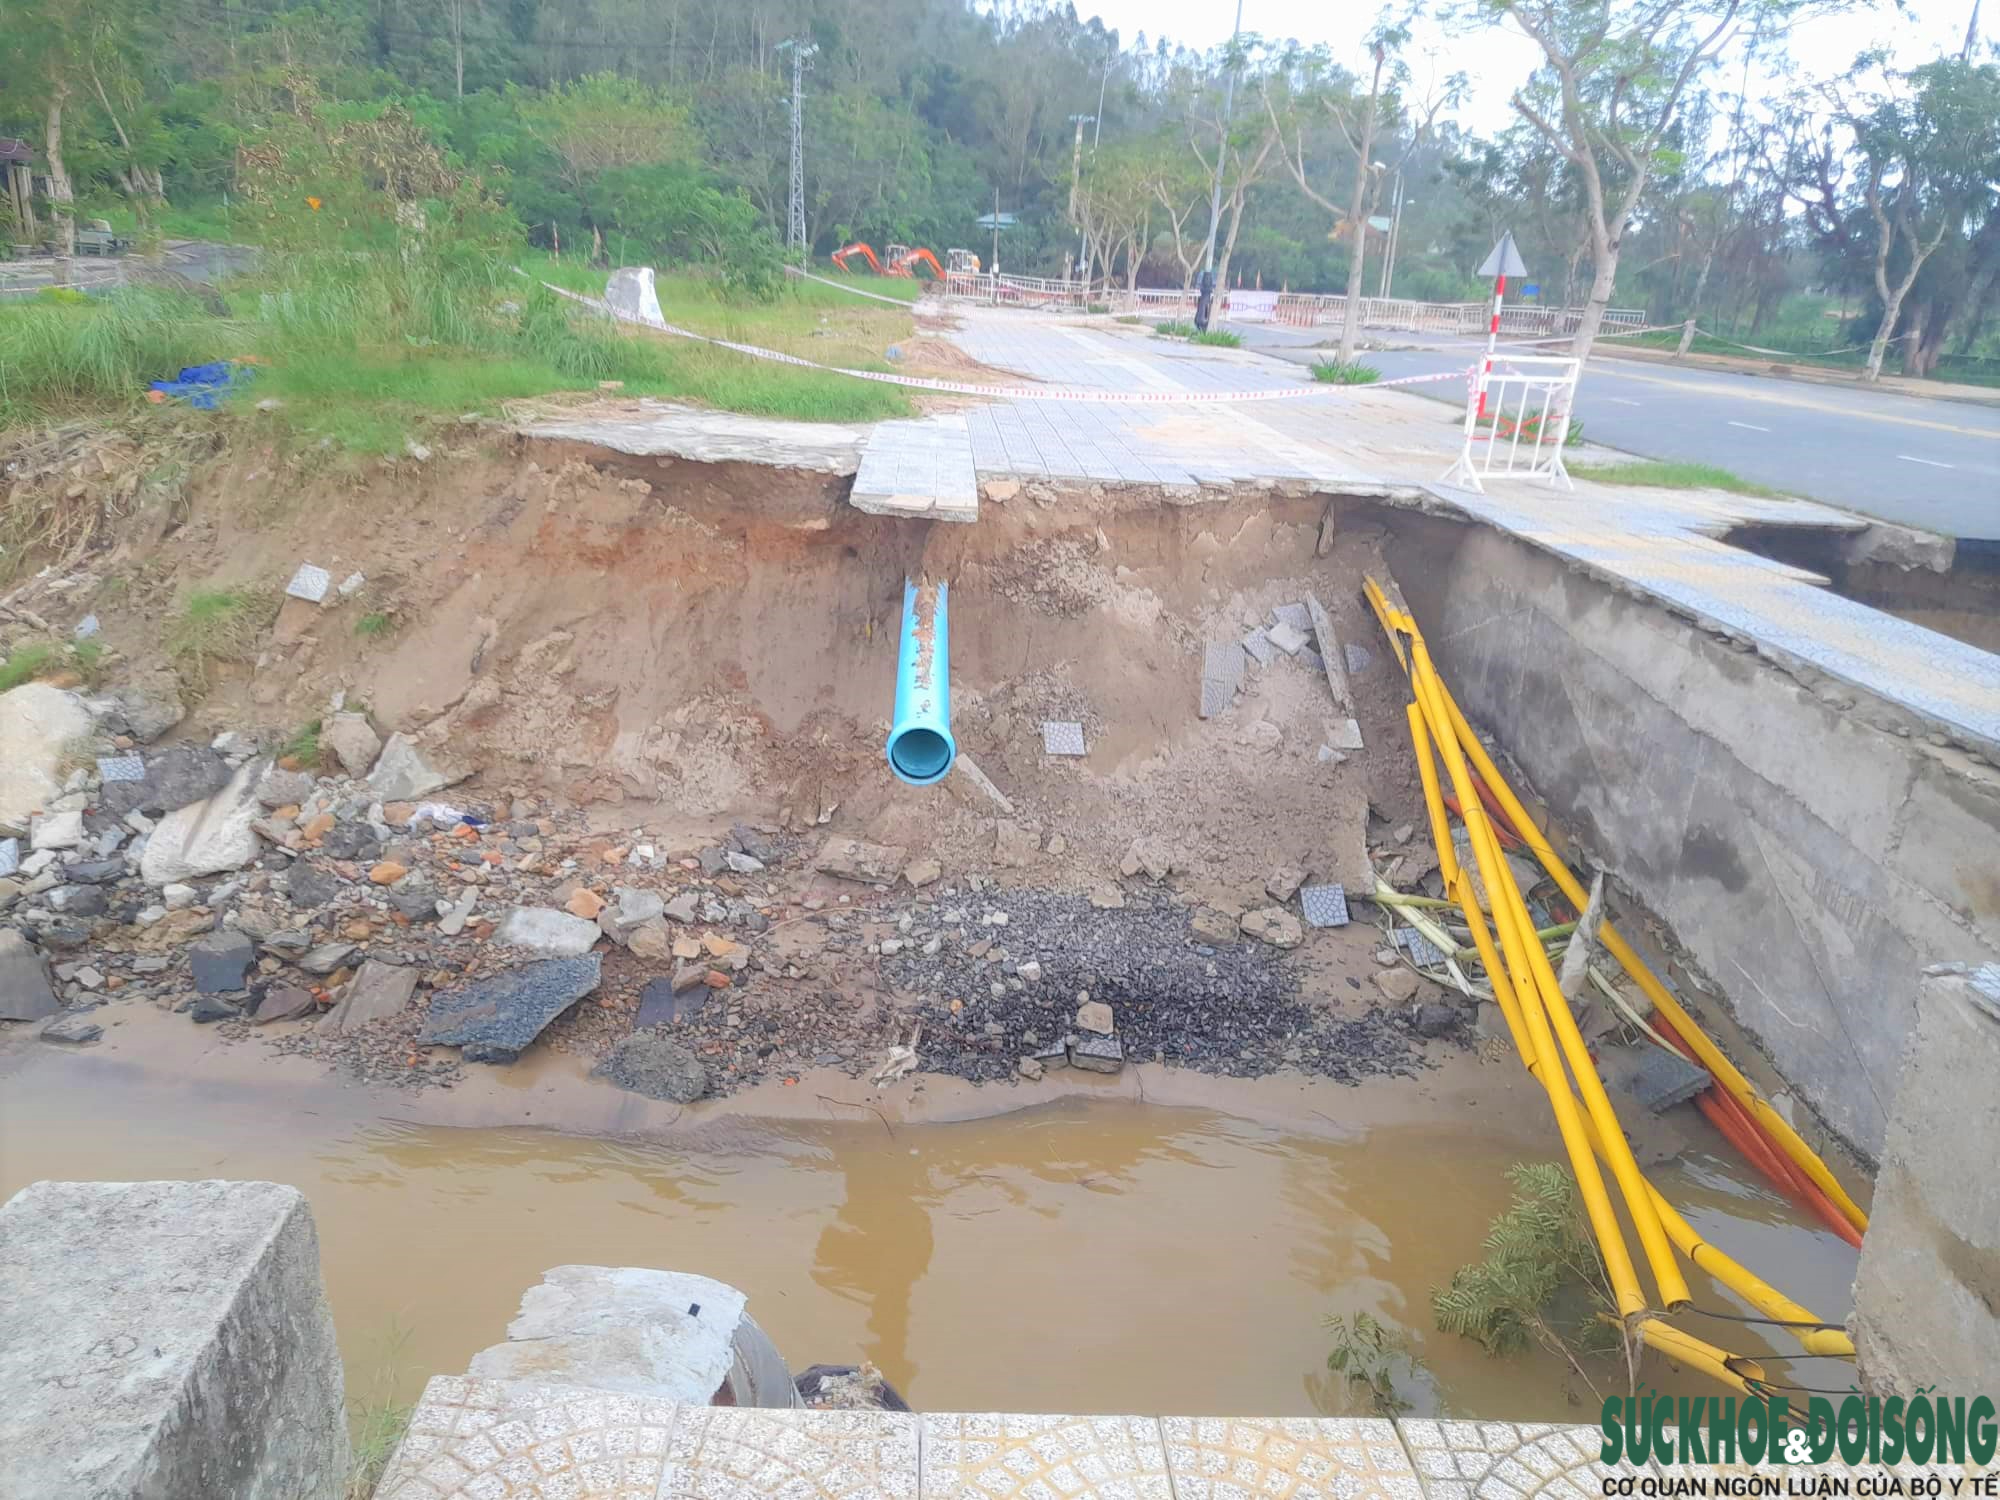 Bán đảo Sơn Trà bị sạt lở nặng sau mưa lũ, nhiều tuyến đường bị nứt toác - Ảnh 2.